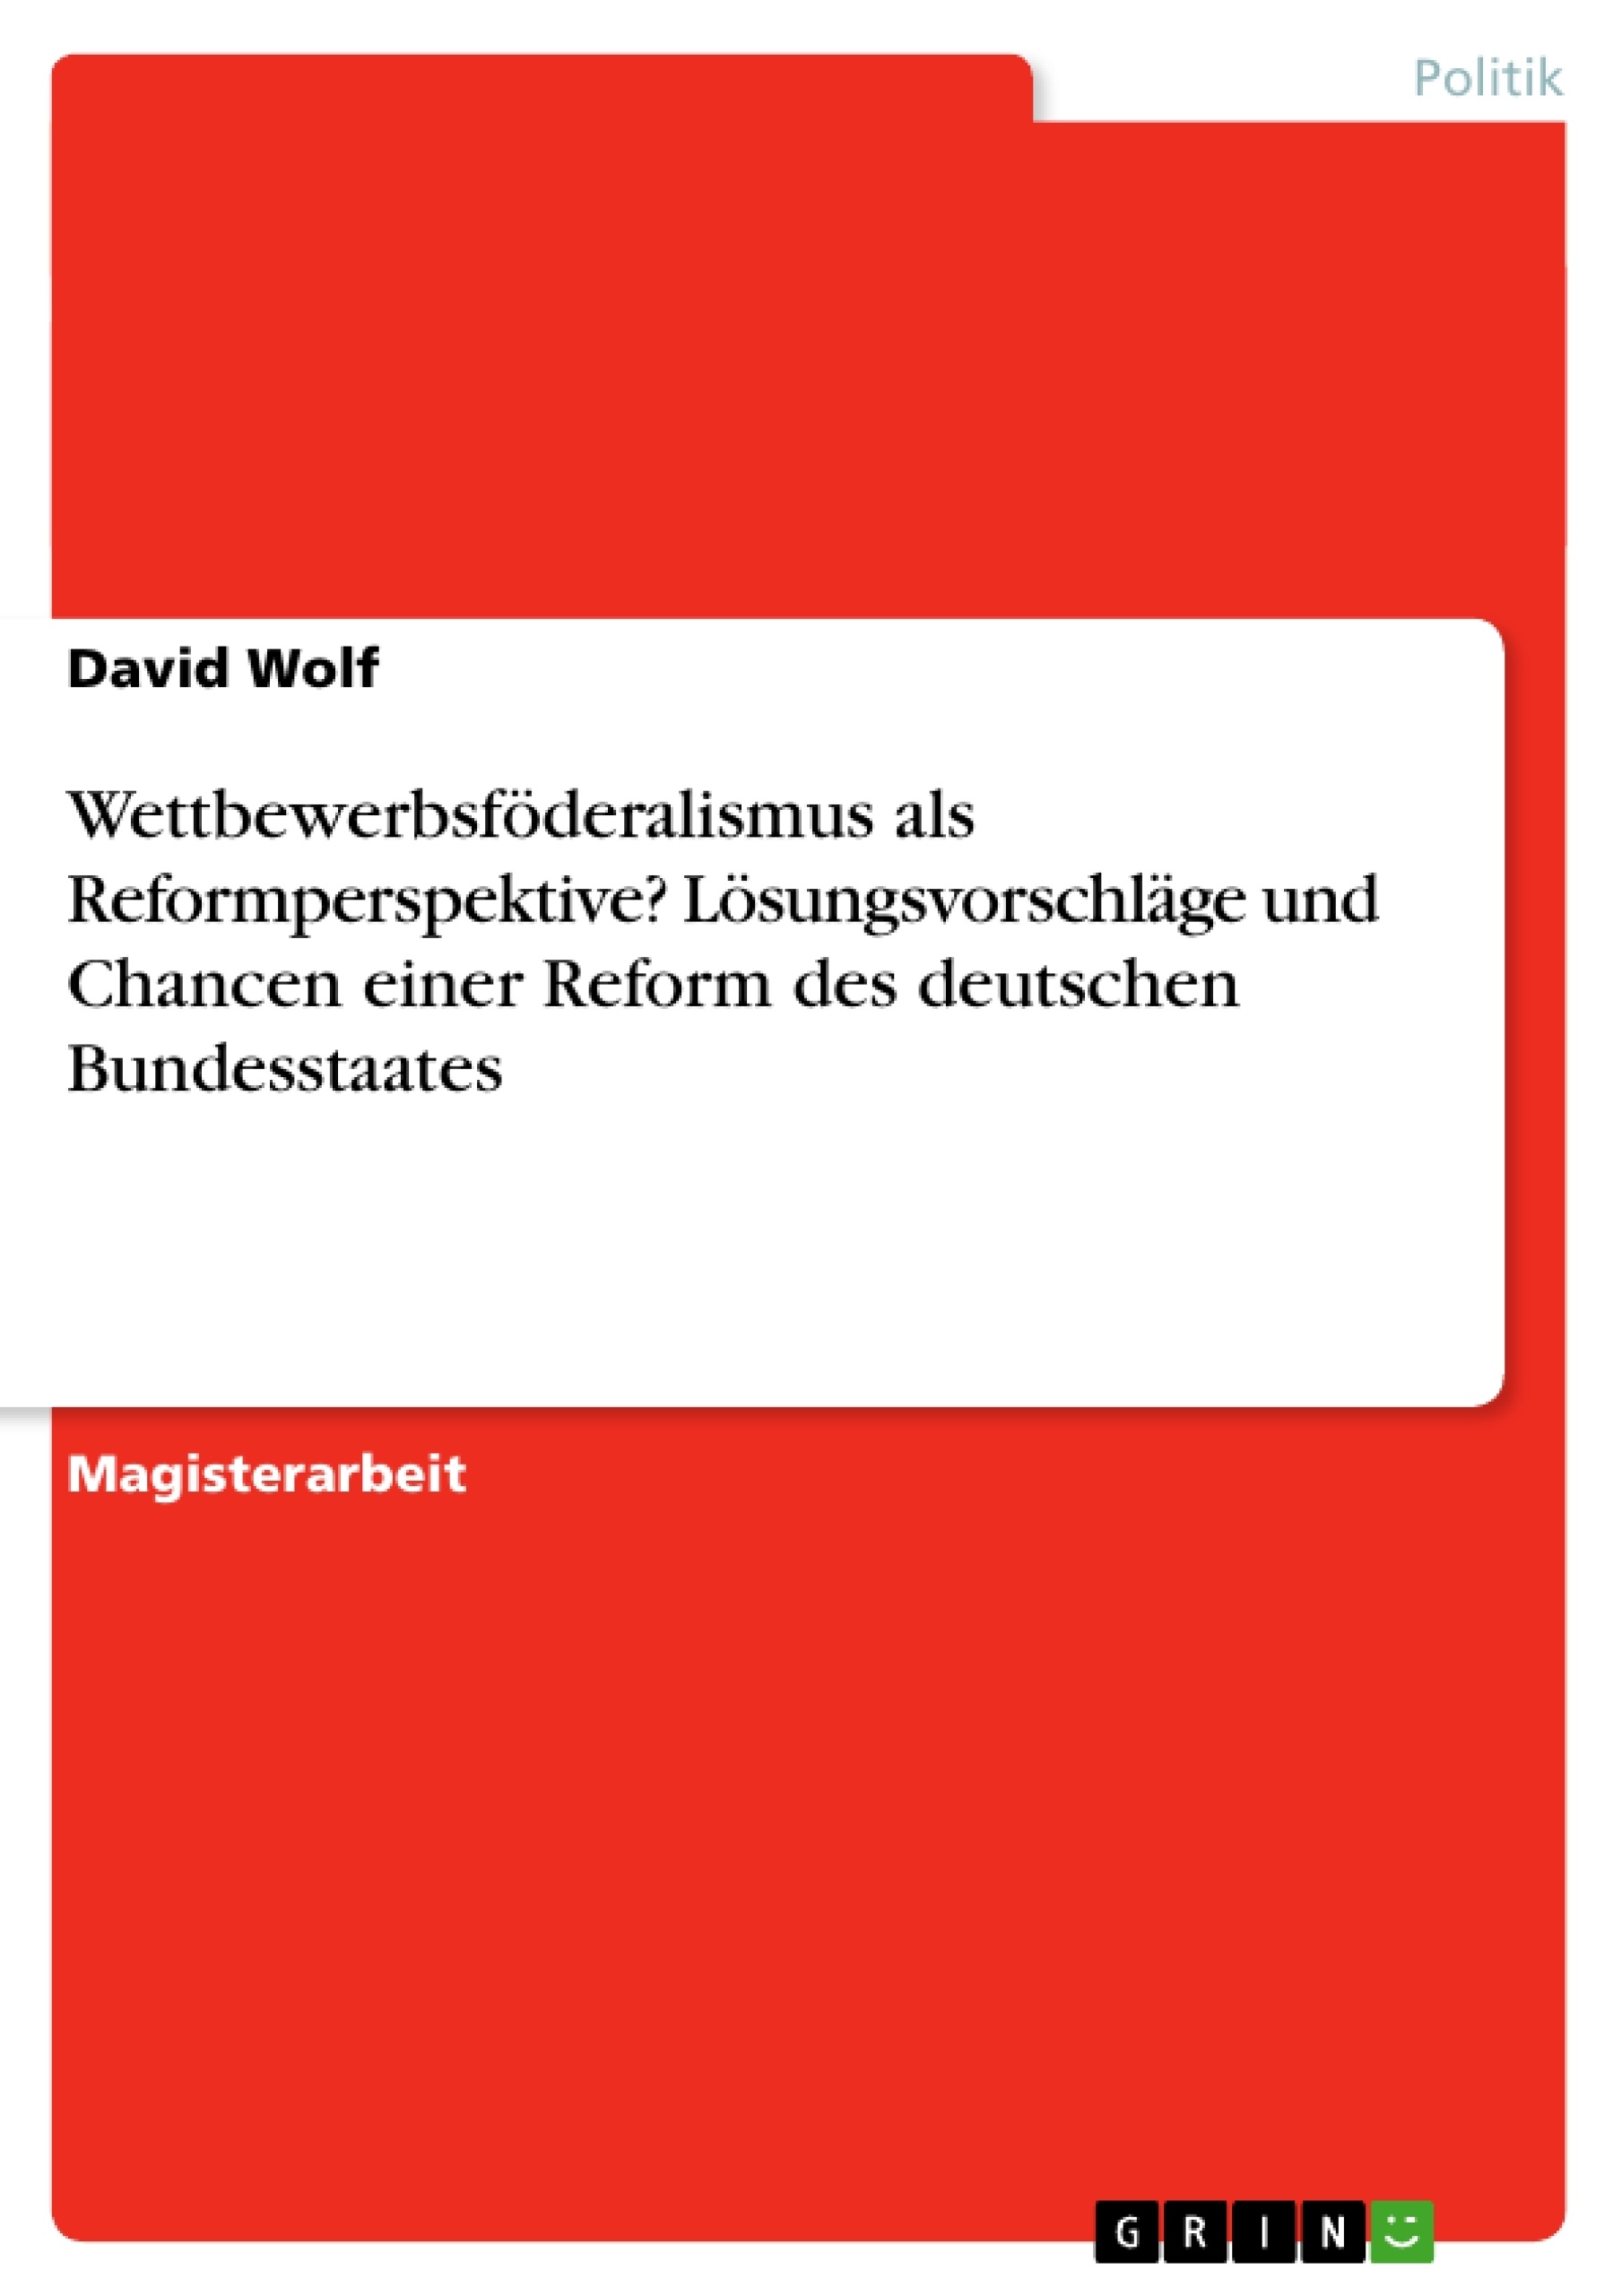 Title: Wettbewerbsföderalismus als Reformperspektive? Lösungsvorschläge und Chancen einer Reform des deutschen Bundesstaates